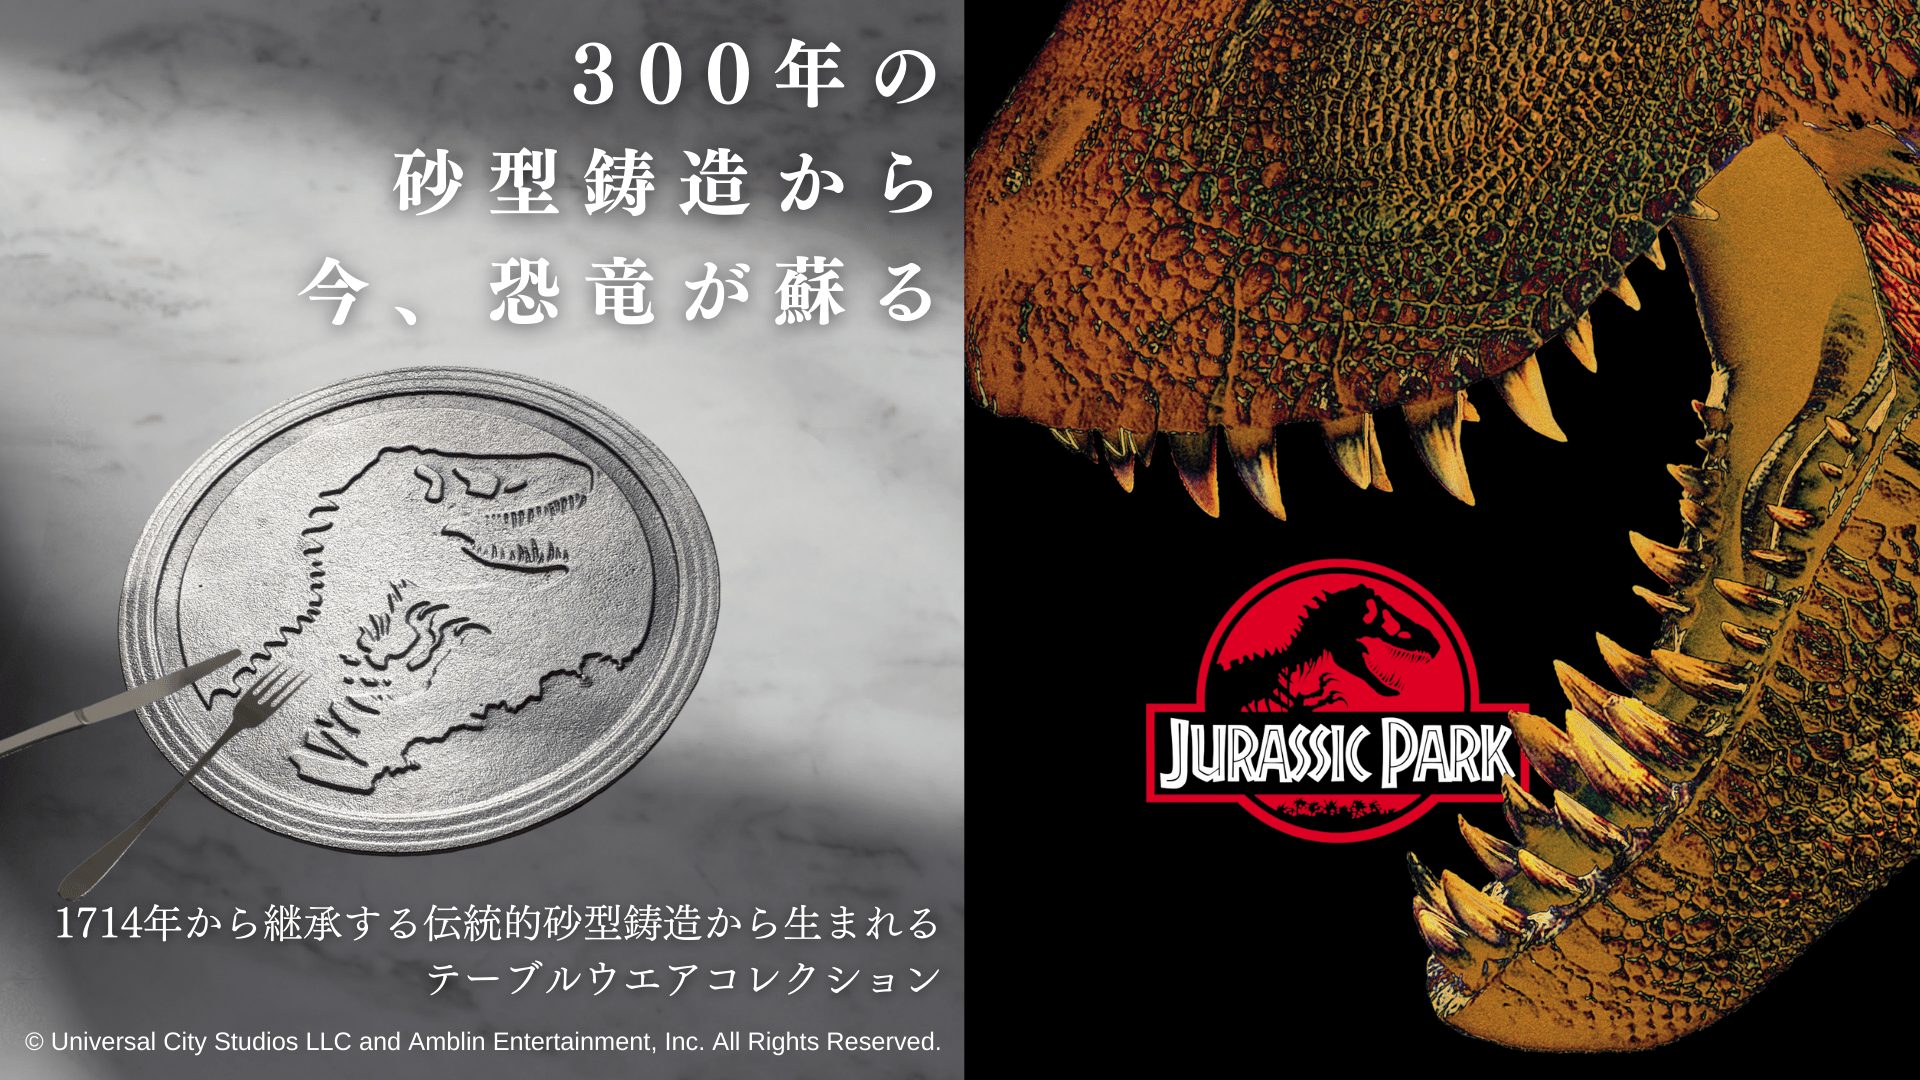 金沢の金森合金、恐竜映画「ジュラシック・パーク」にちなんだプレート制作／マクアケで購入可